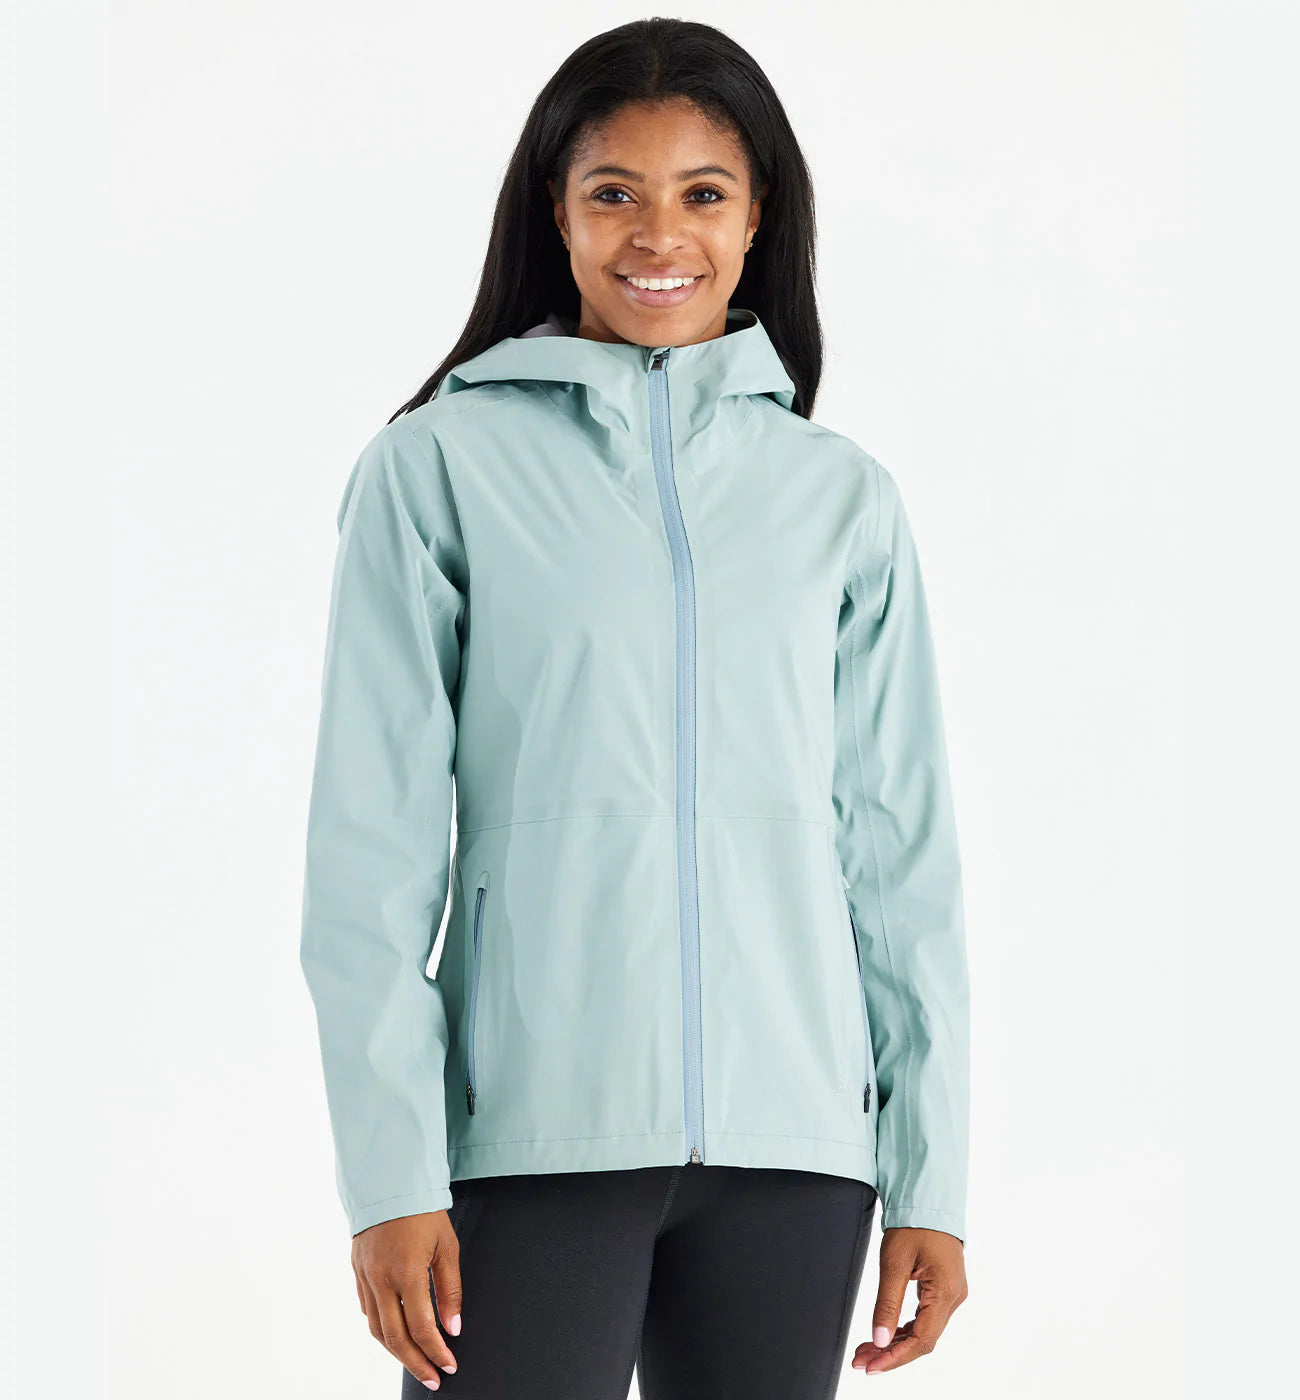 Women's Cloudshield Rain Jacket  Light Women's Rain Jacket – Free Fly  Apparel